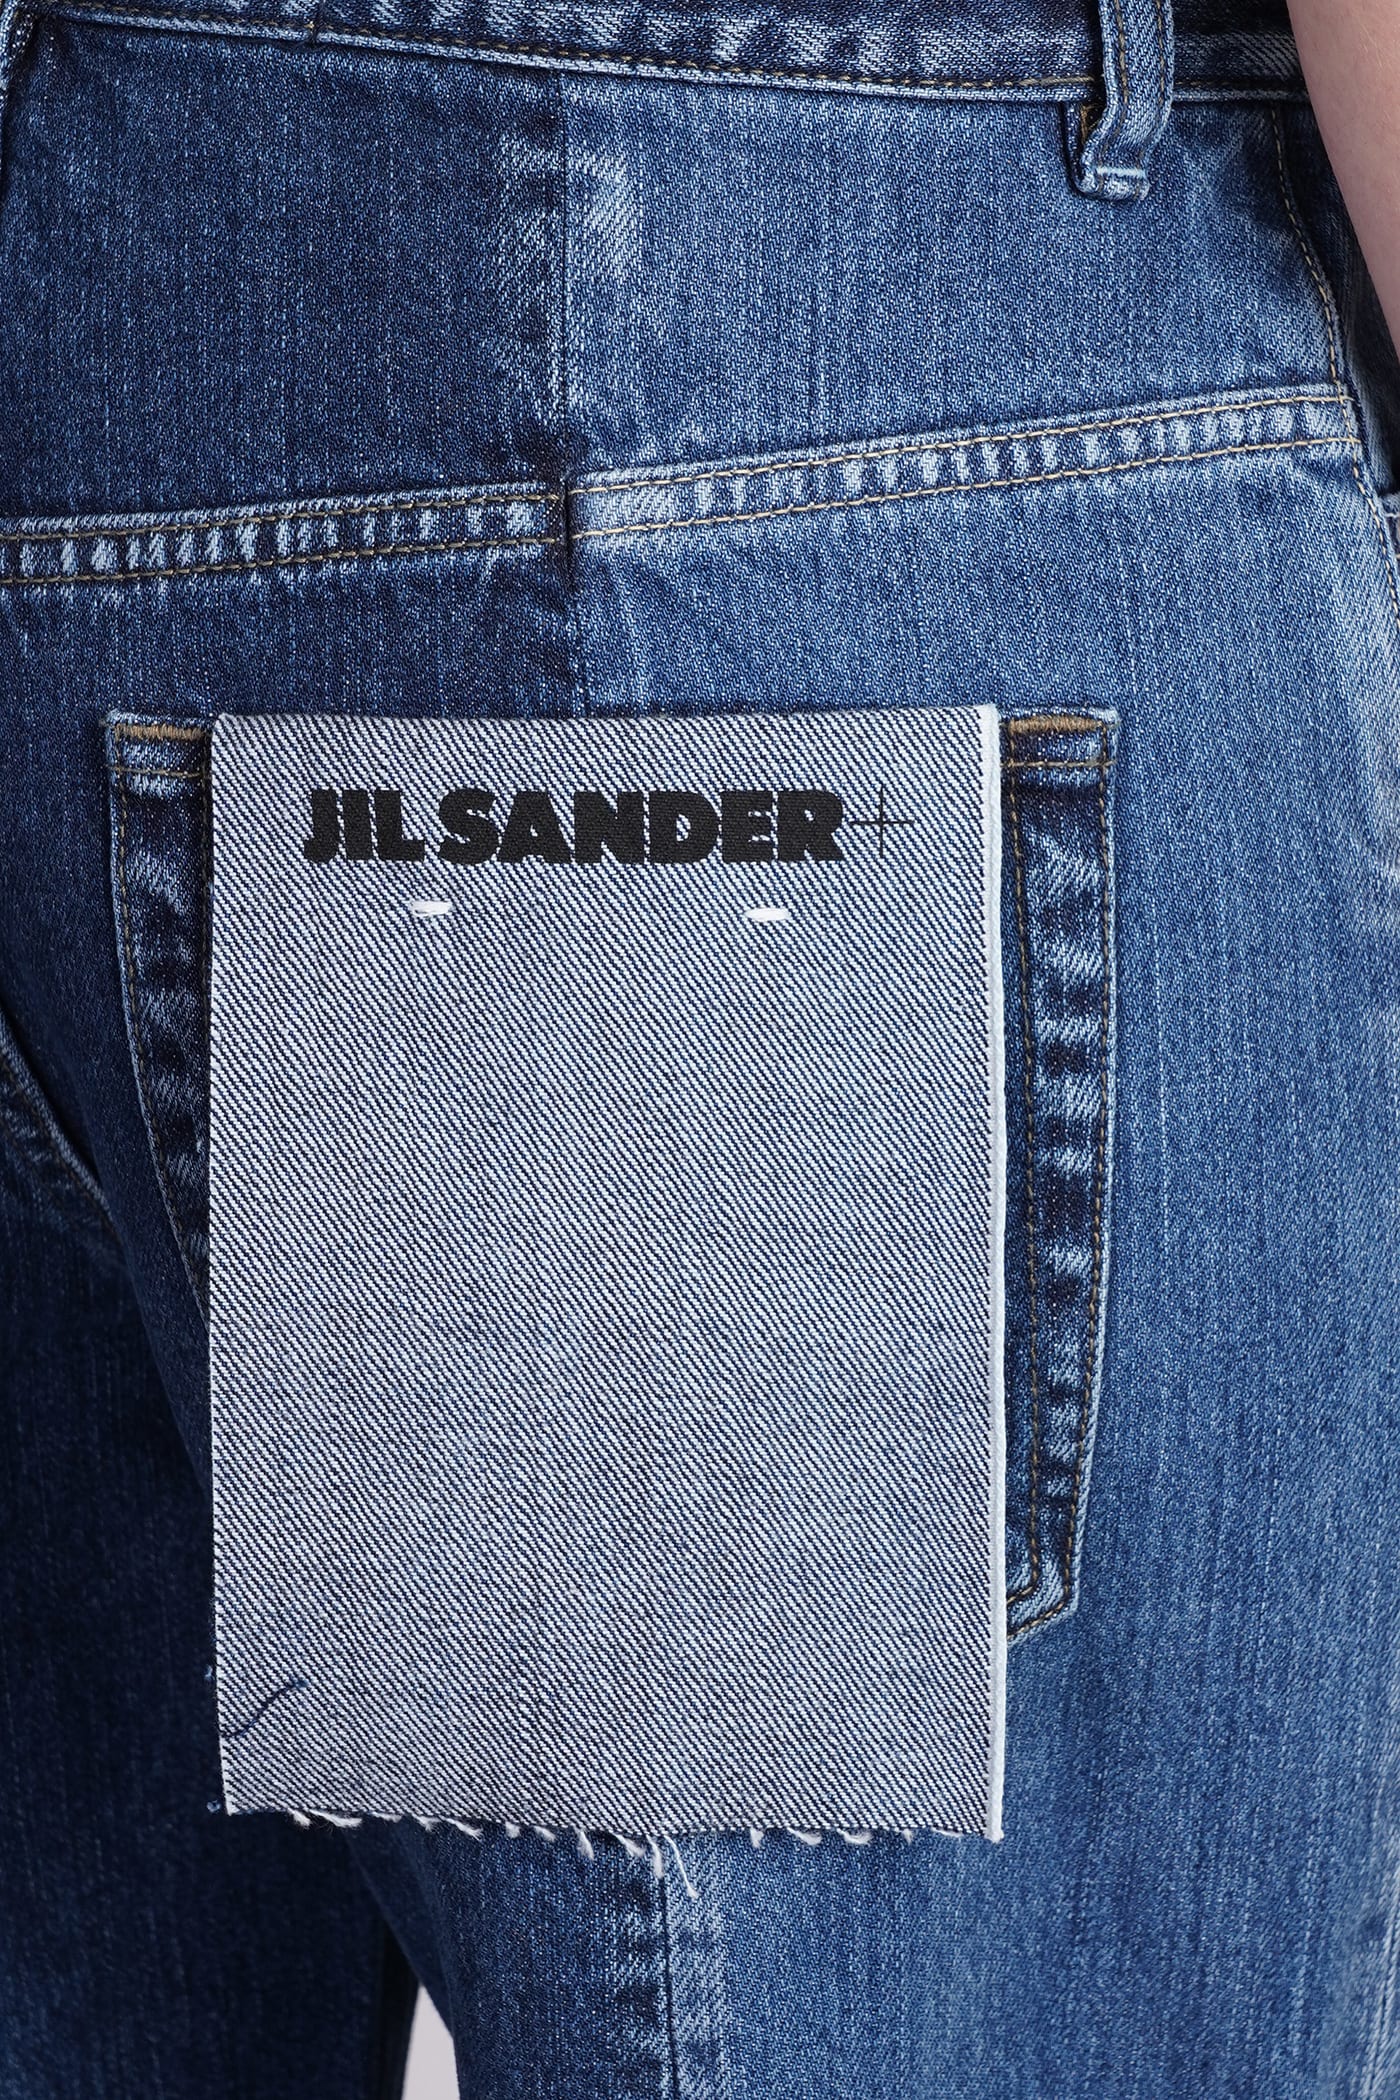 Shop Jil Sander Jeans In Blue Denim